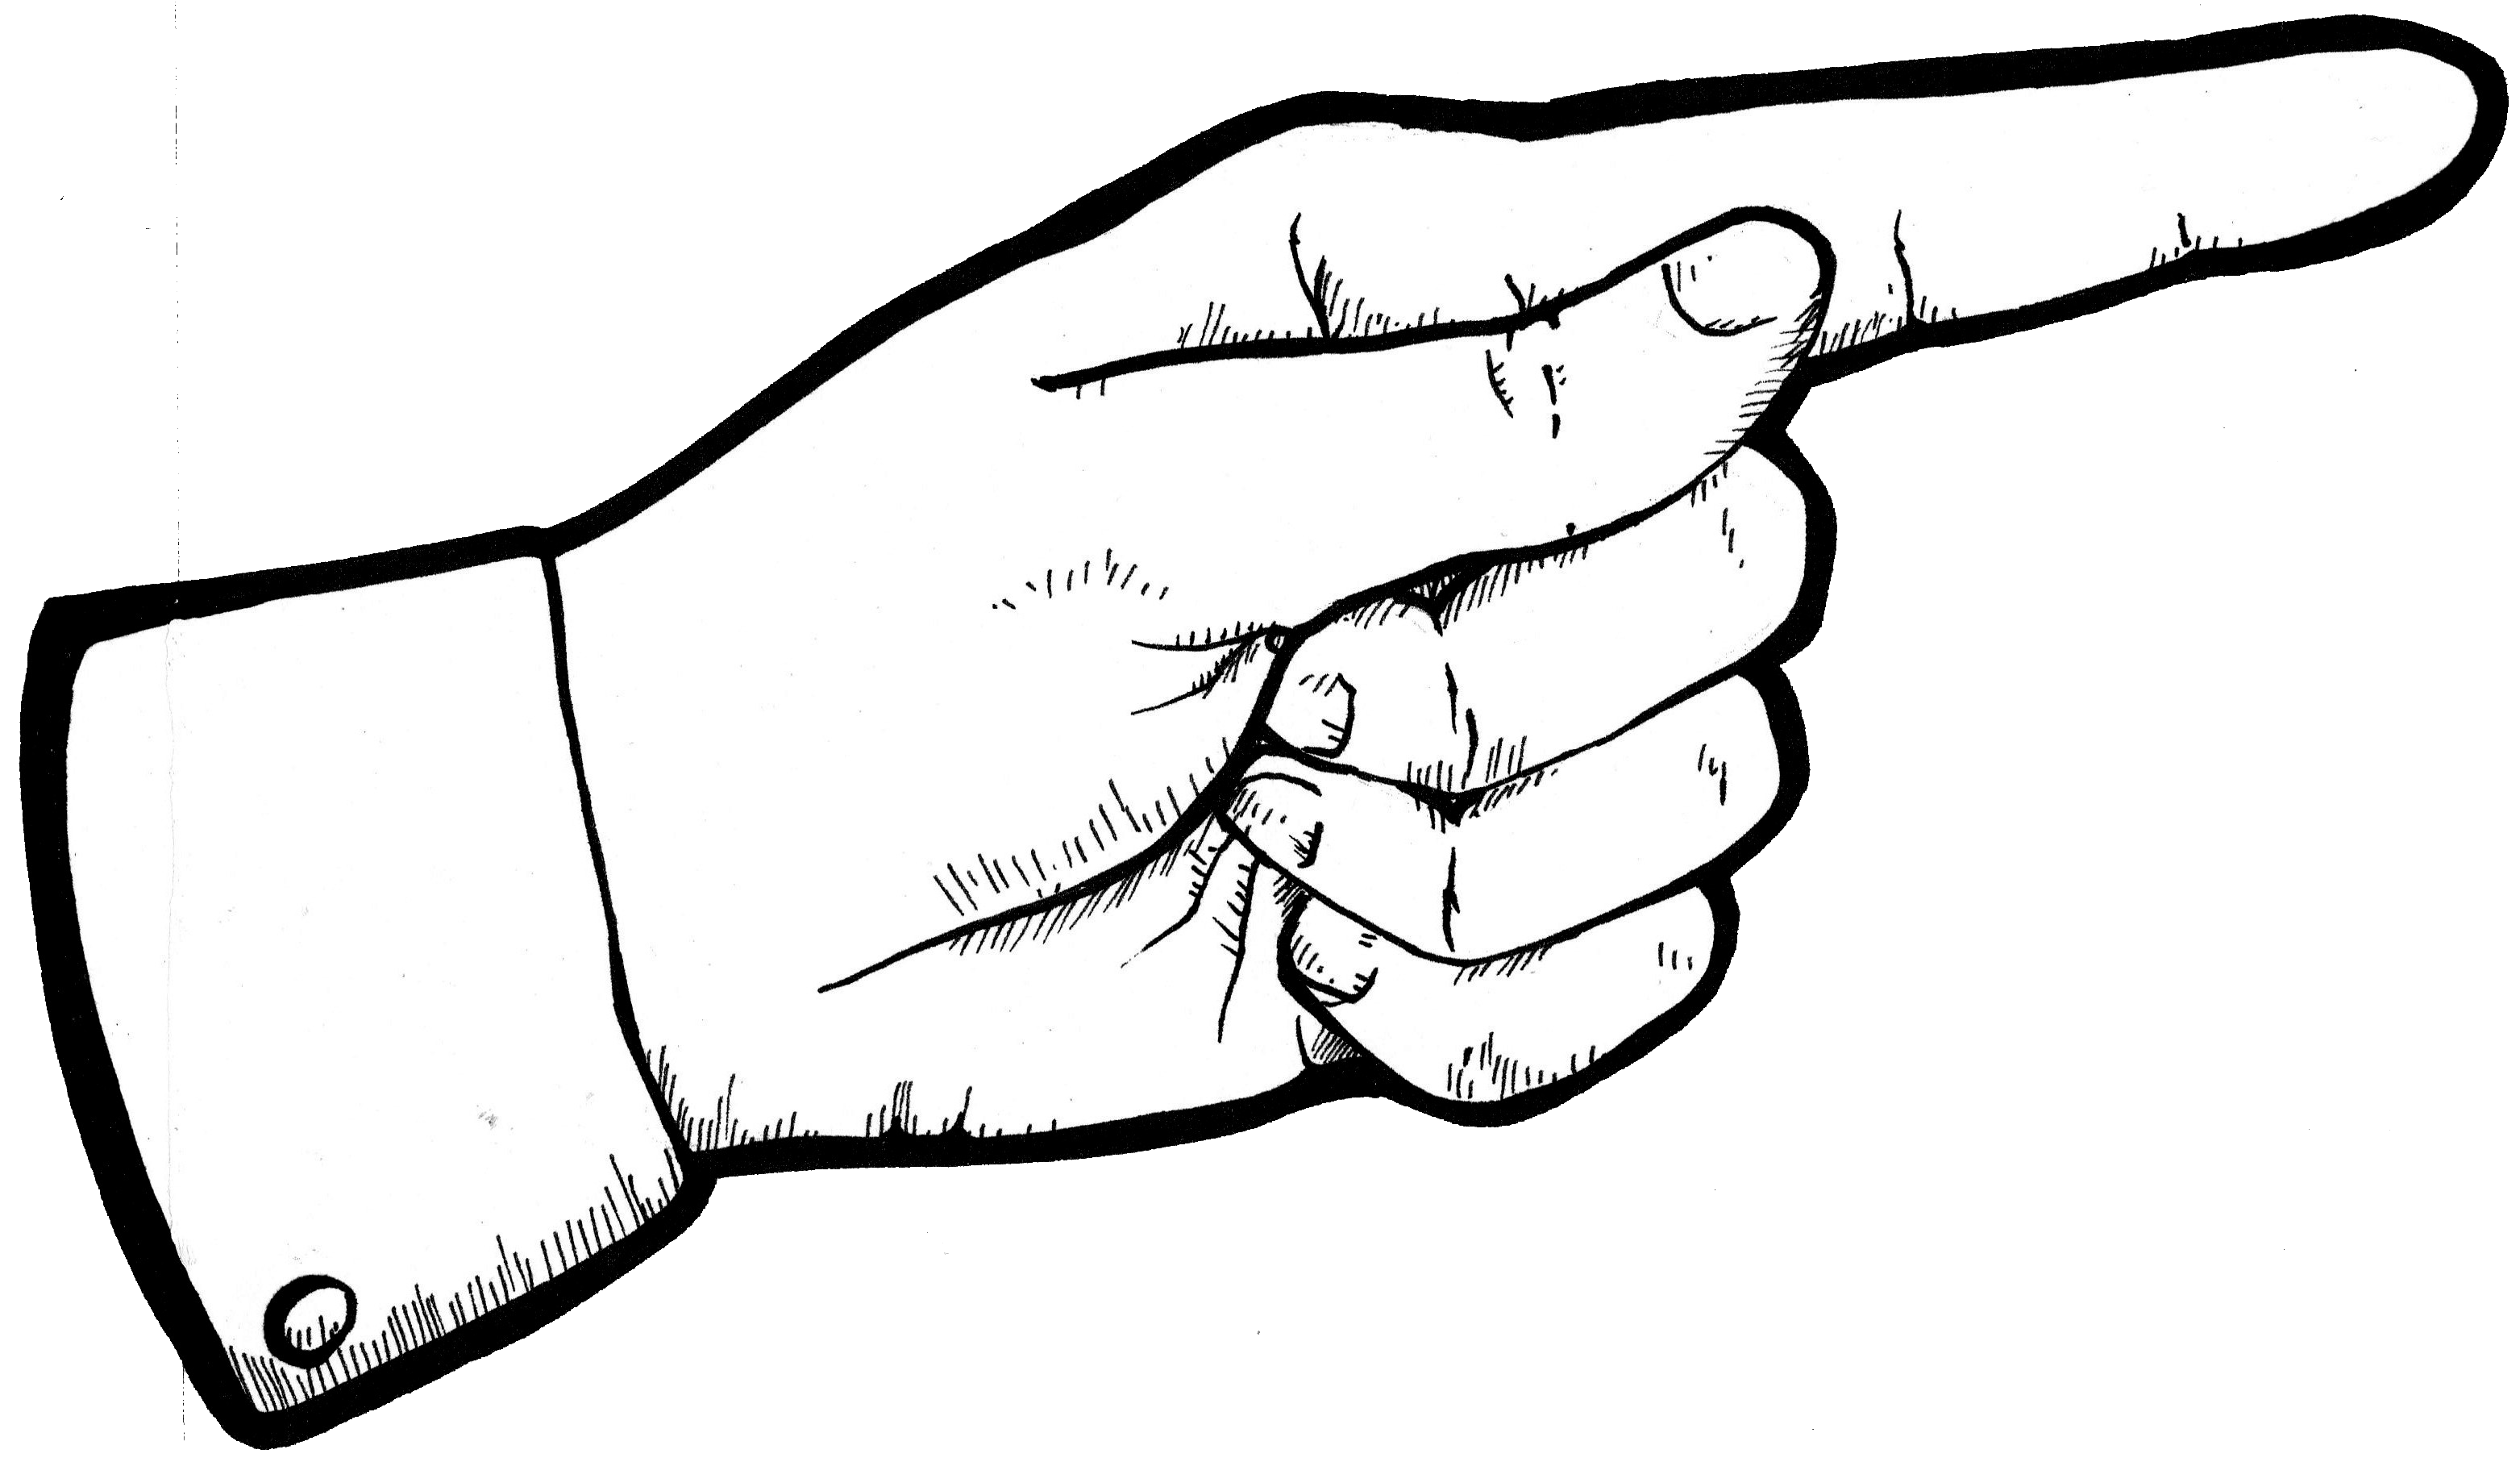 Hand Zeigefinger Clipart / Strichmännchen mit Zeigefinger - Hand